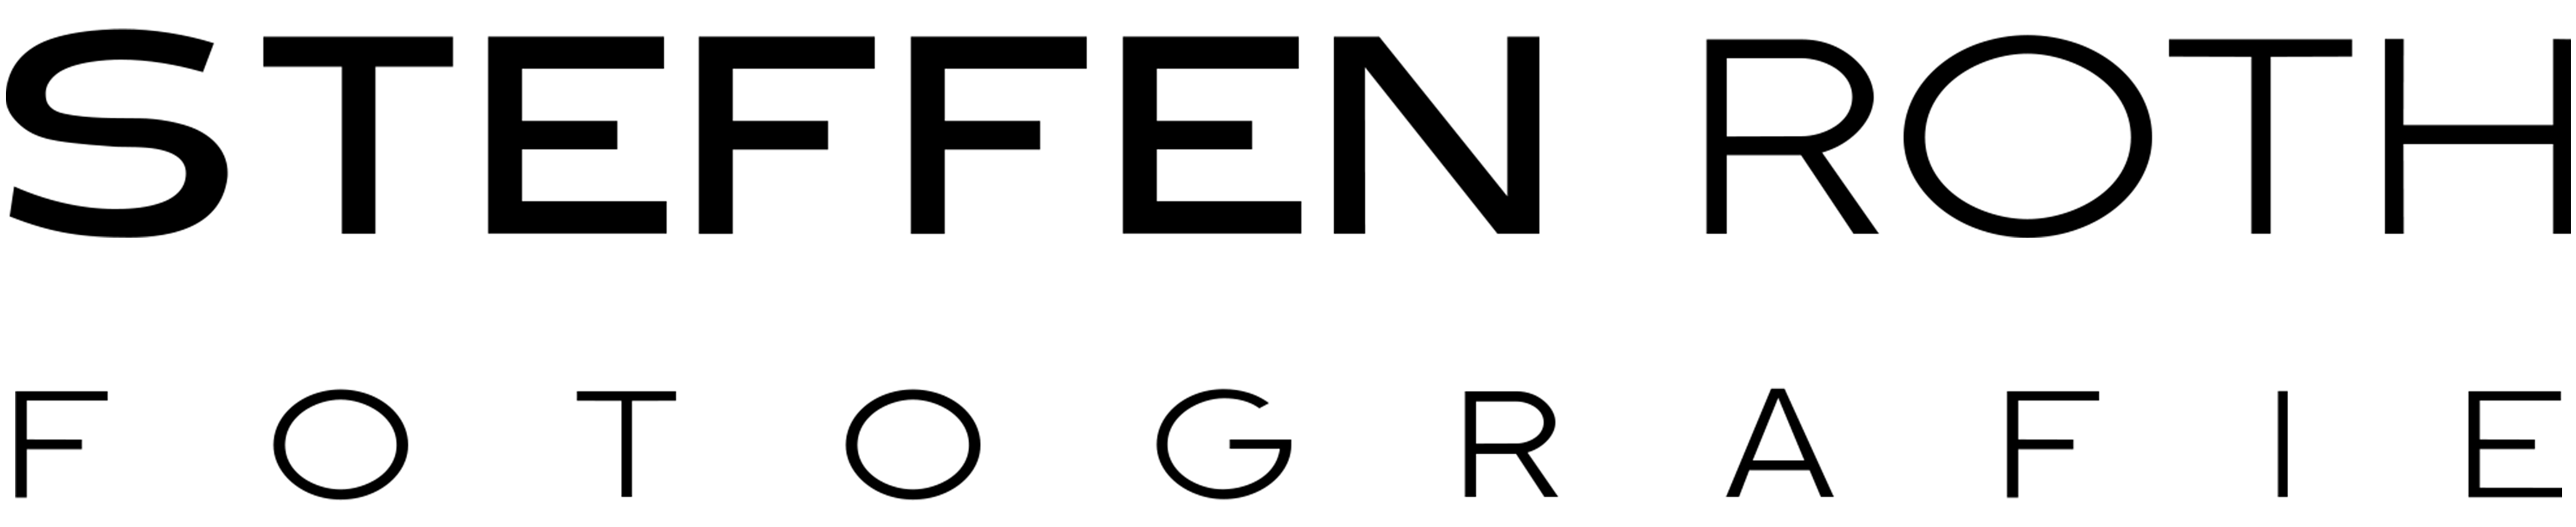 Steffen Roth Fotografie Logo